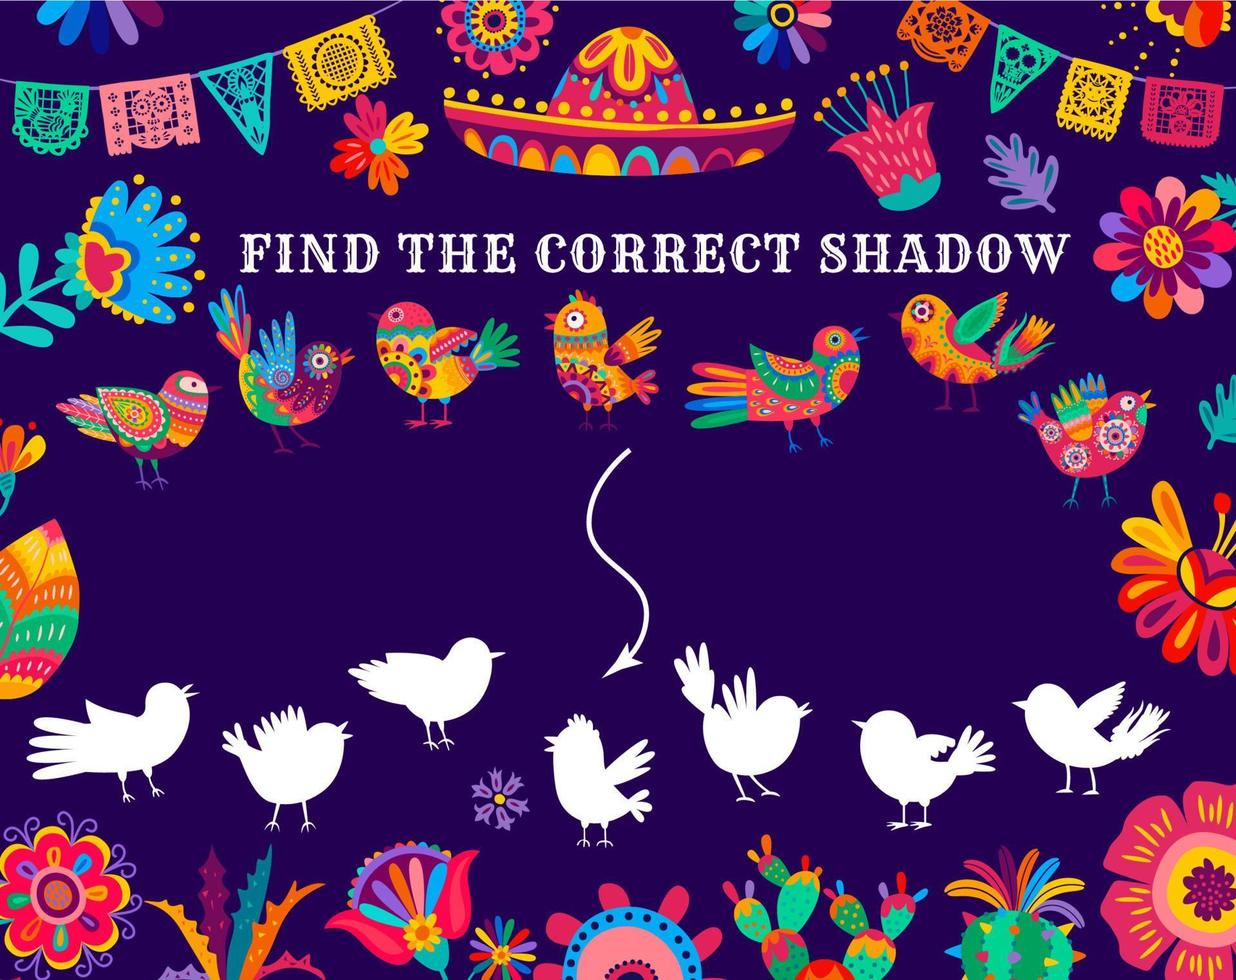 Finde den richtigen Schatten von Alebrije-Vögeln Kinderspiel vektor